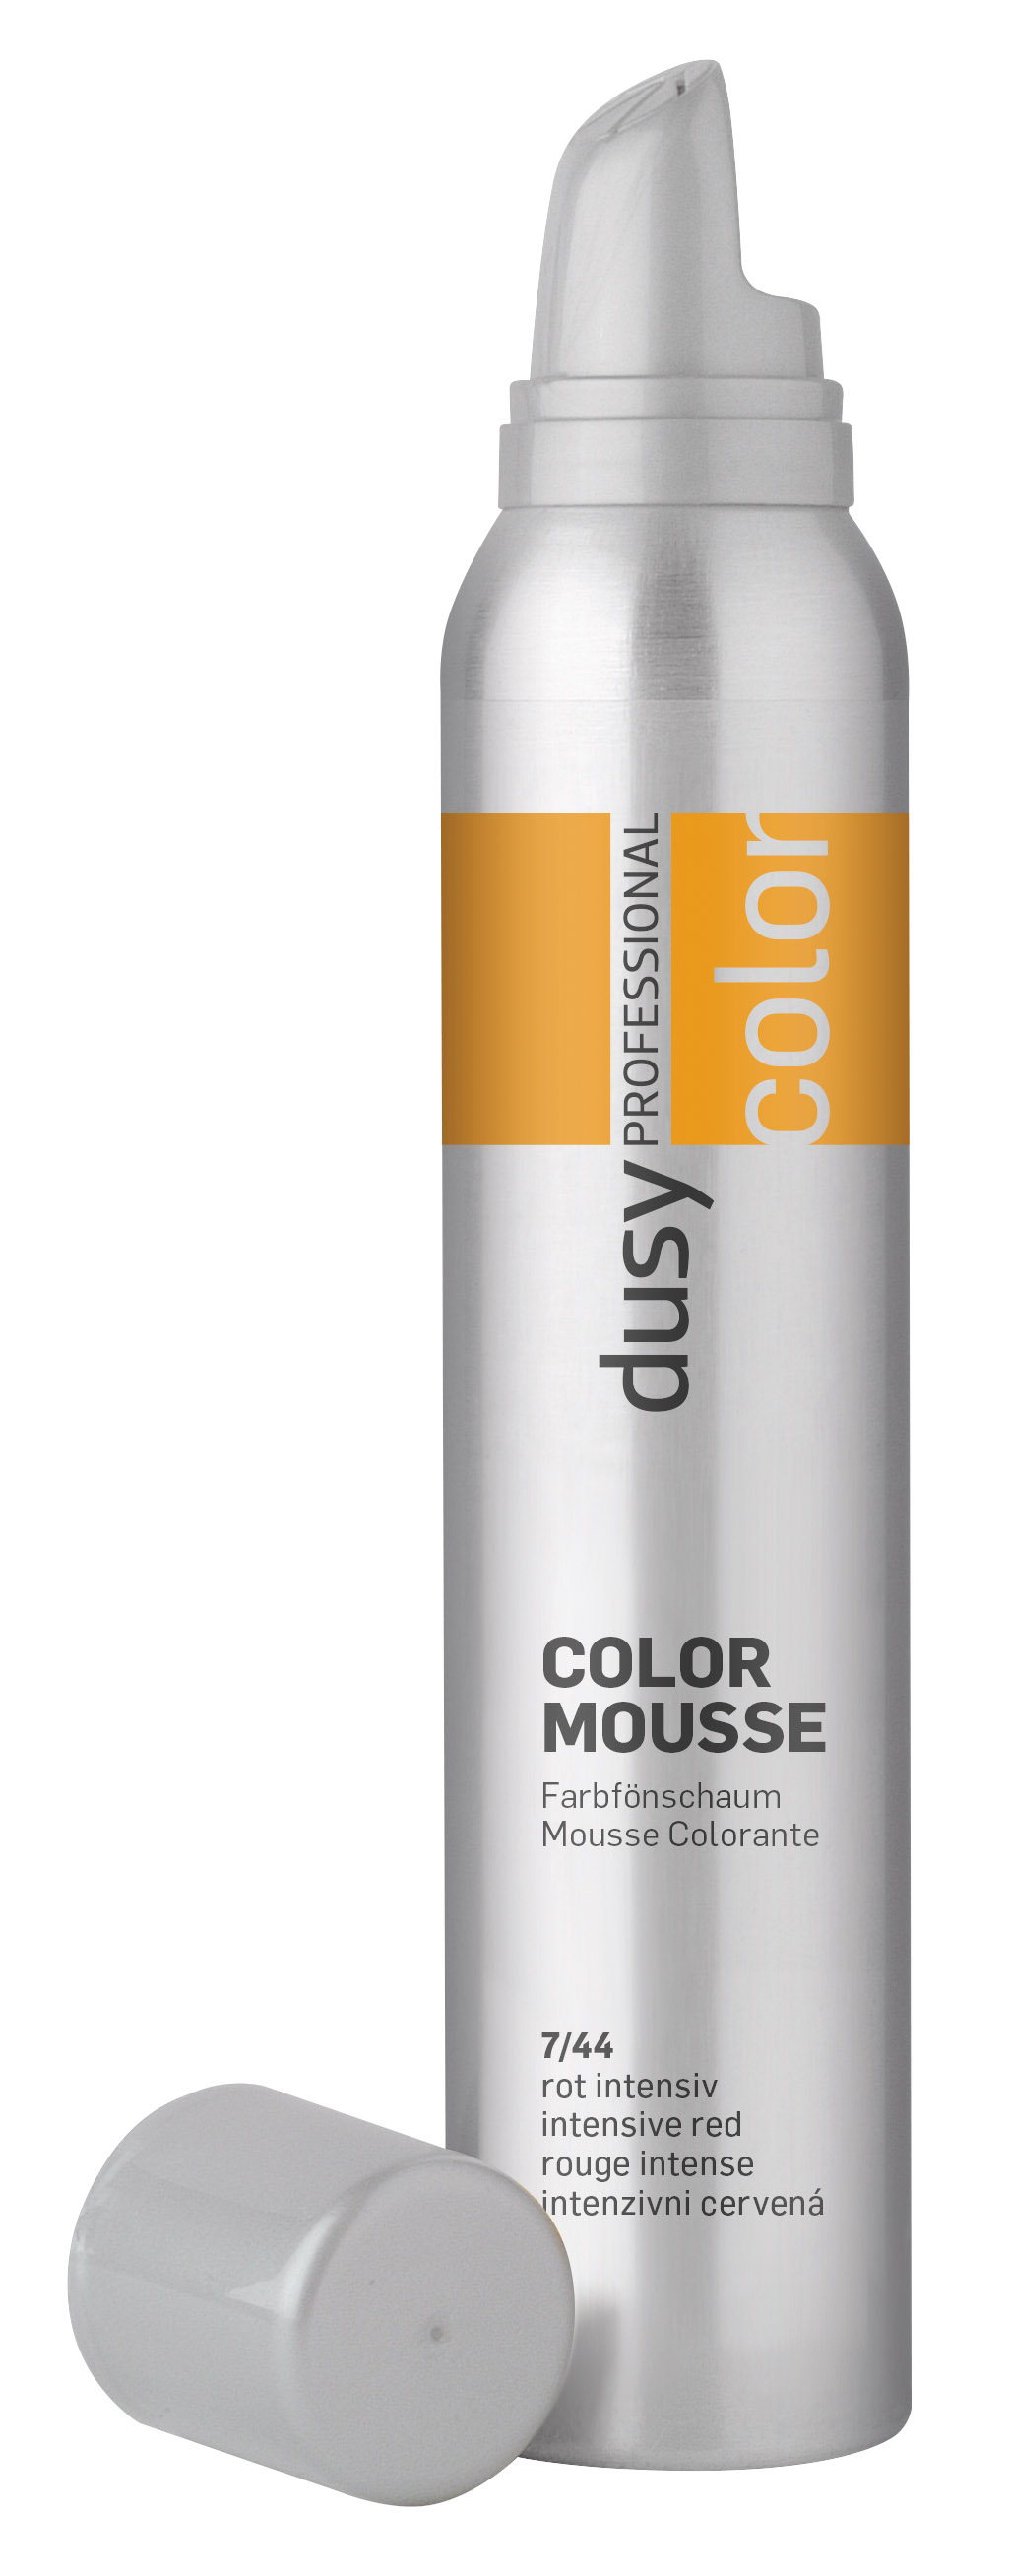 Dusy Color Mousse 200ml